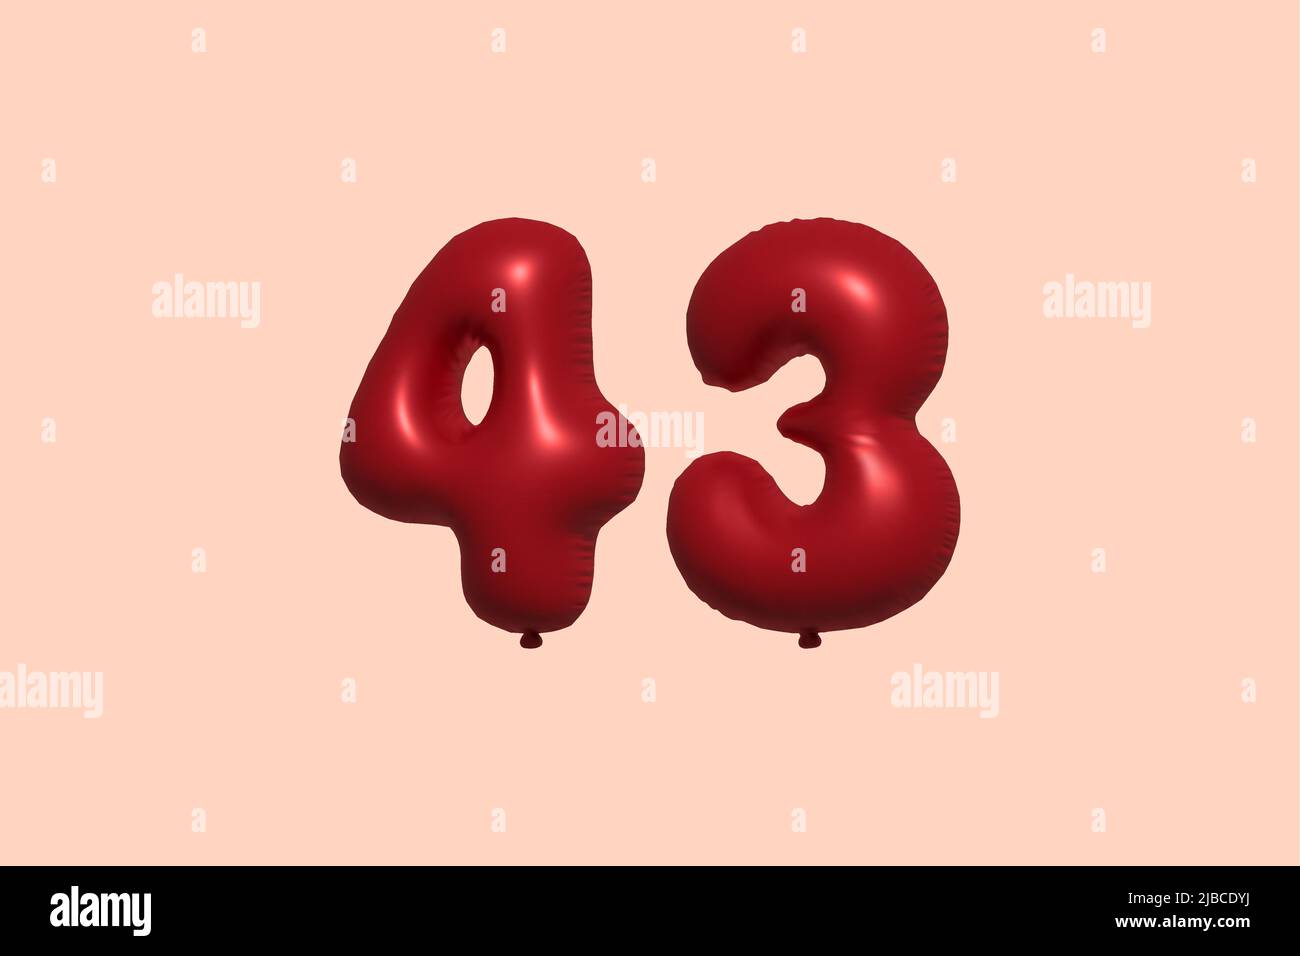 palloncino in numero 43 3d realizzato con rendering realistico di palloncino in aria metallica 3d. 3D palloncini di elio rosso per la vendita decorazione Party compleanno, celebrare anniversario, Vacanza nuziale. Illustrazione vettoriale Illustrazione Vettoriale